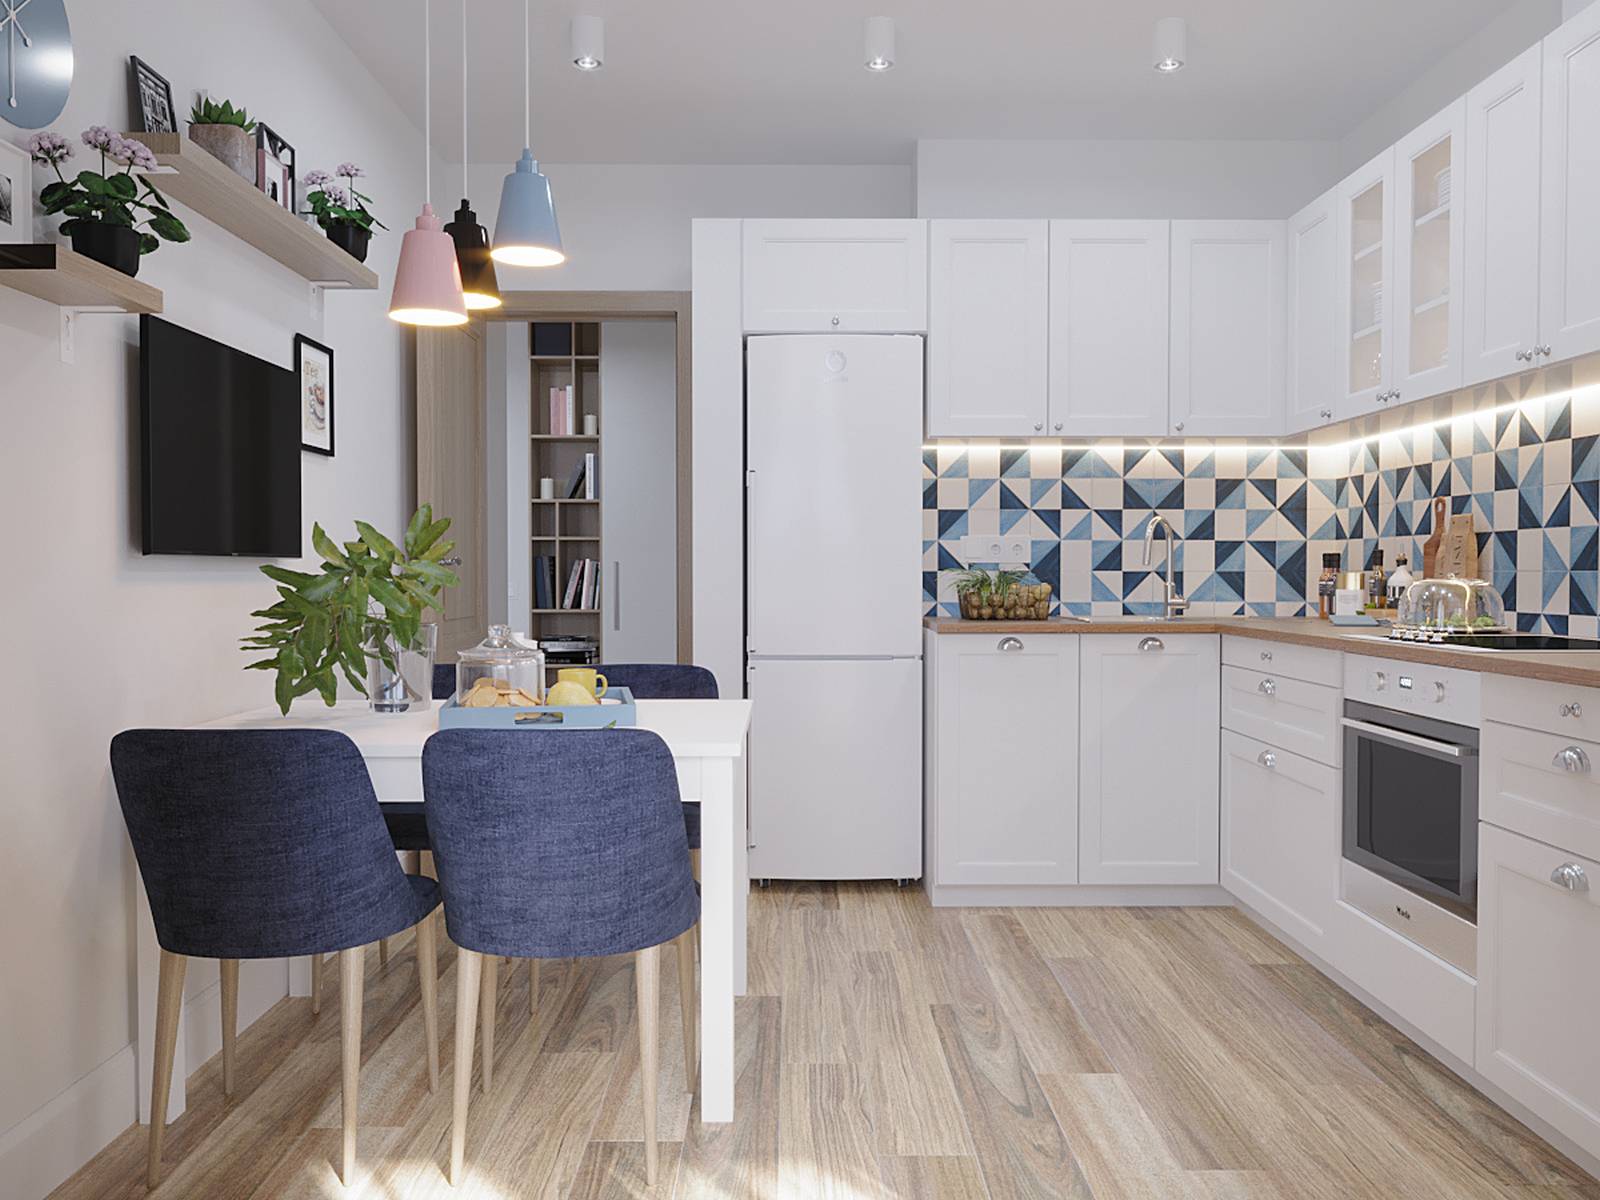 Phòng bếp và khu vực ăn uống được thiết kế riêng biệt theo yêu cầu. Phòng bếp lựa chọn kiểu dáng chữ L với hệ tủ màu trắng sạch sẽ, tiện nghi. Kiểu bếp này cũng được sử dụng phổ biến cho những không gian vừa và nhỏ.